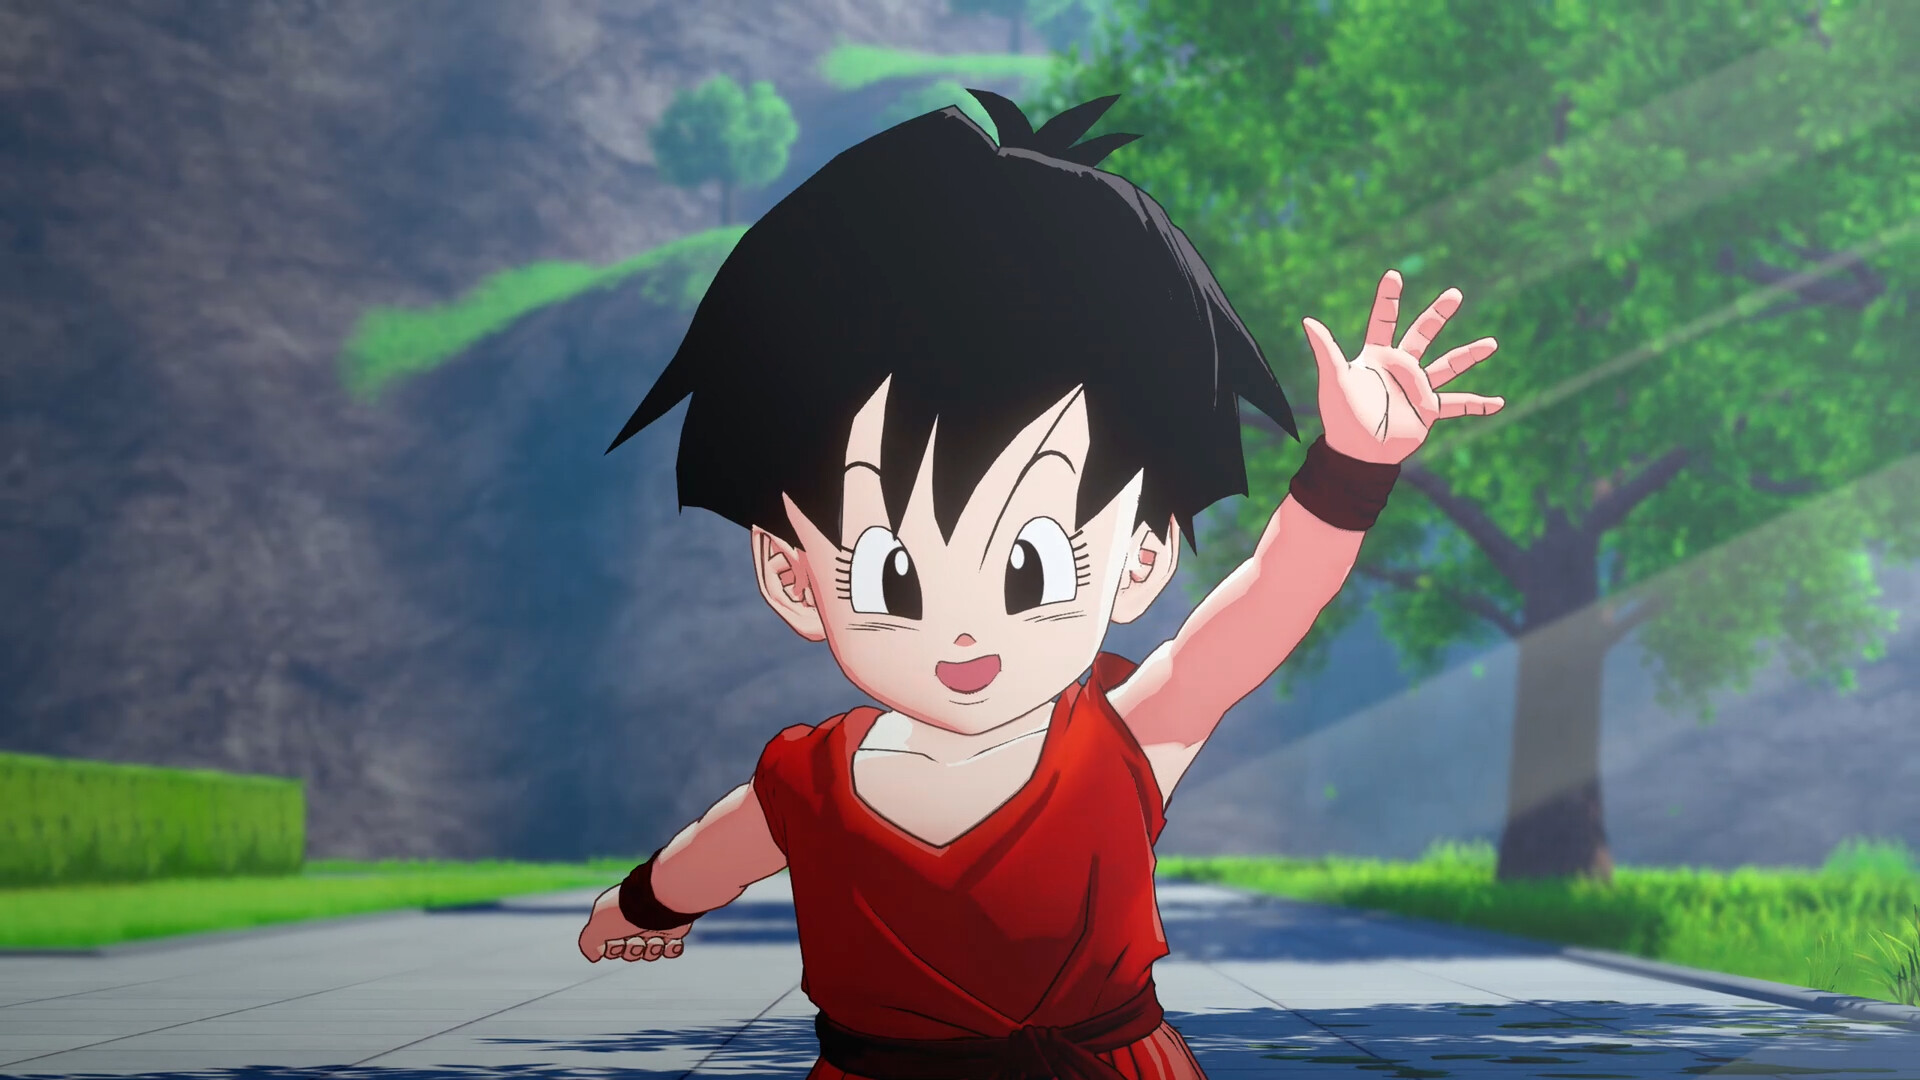 DRAGON BALL Z: KAKAROT - Goku's Next Journey Featured Screenshot #1